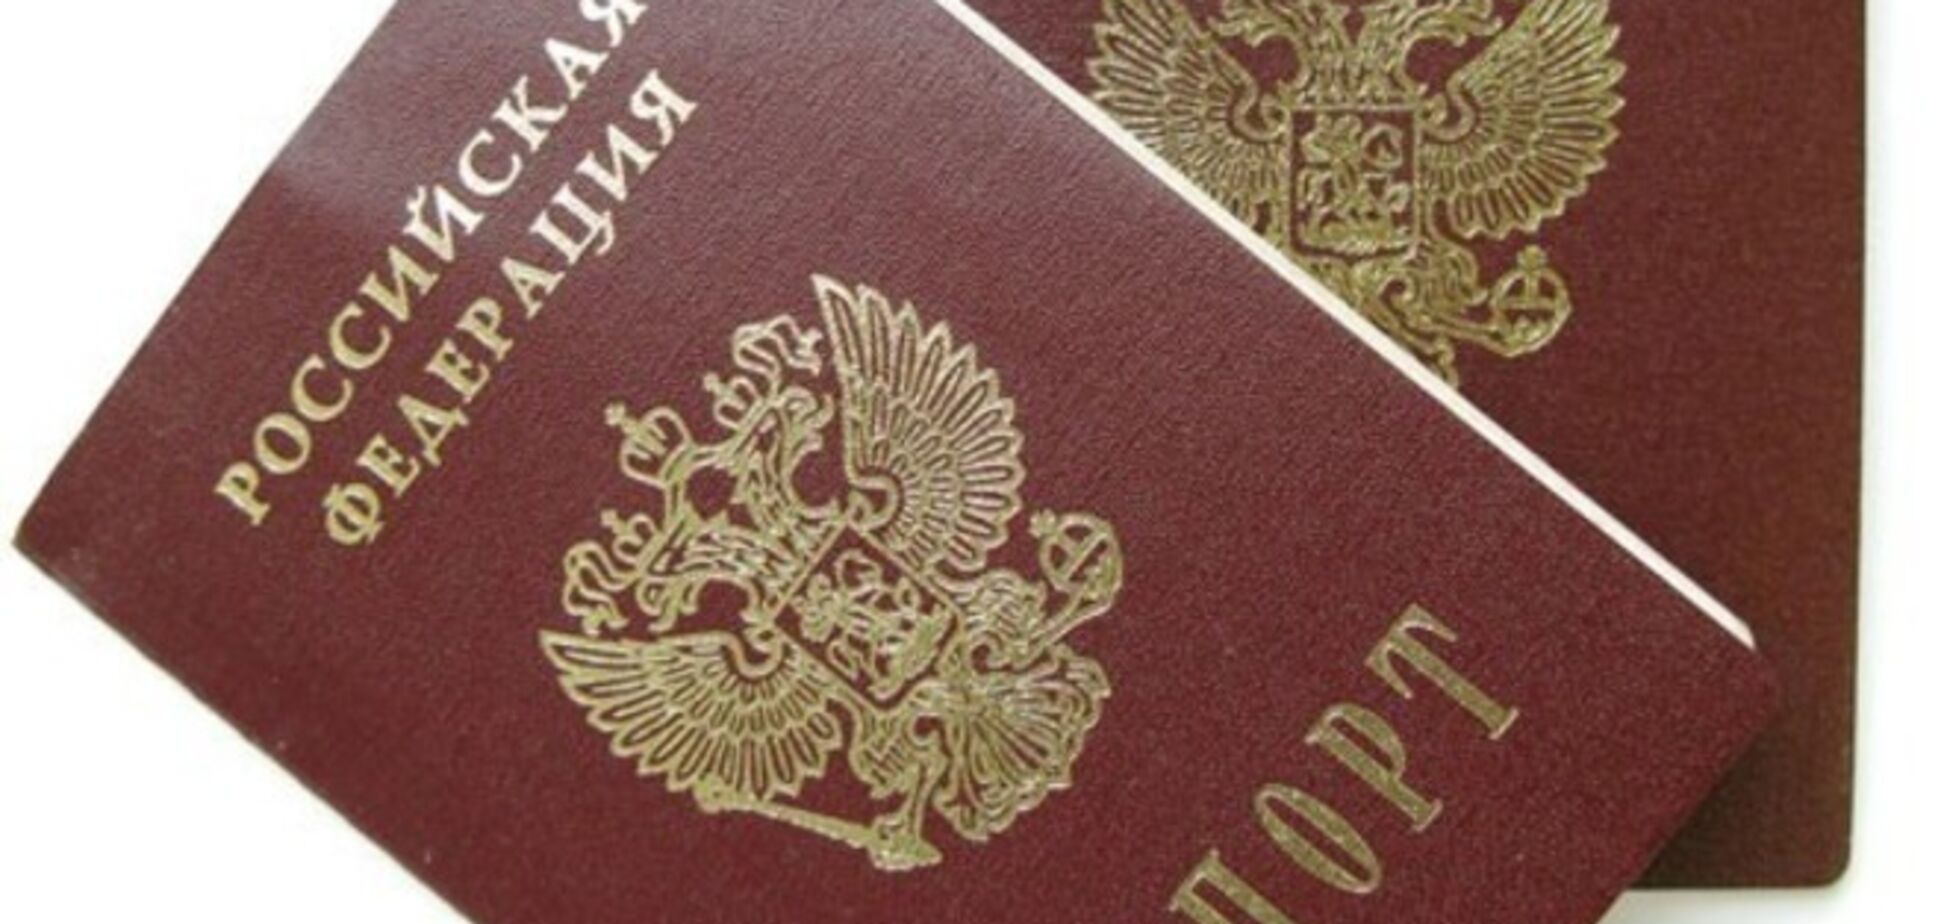 Росіяни в паспортах будуть вказувати згоду на вилучення у них органів 